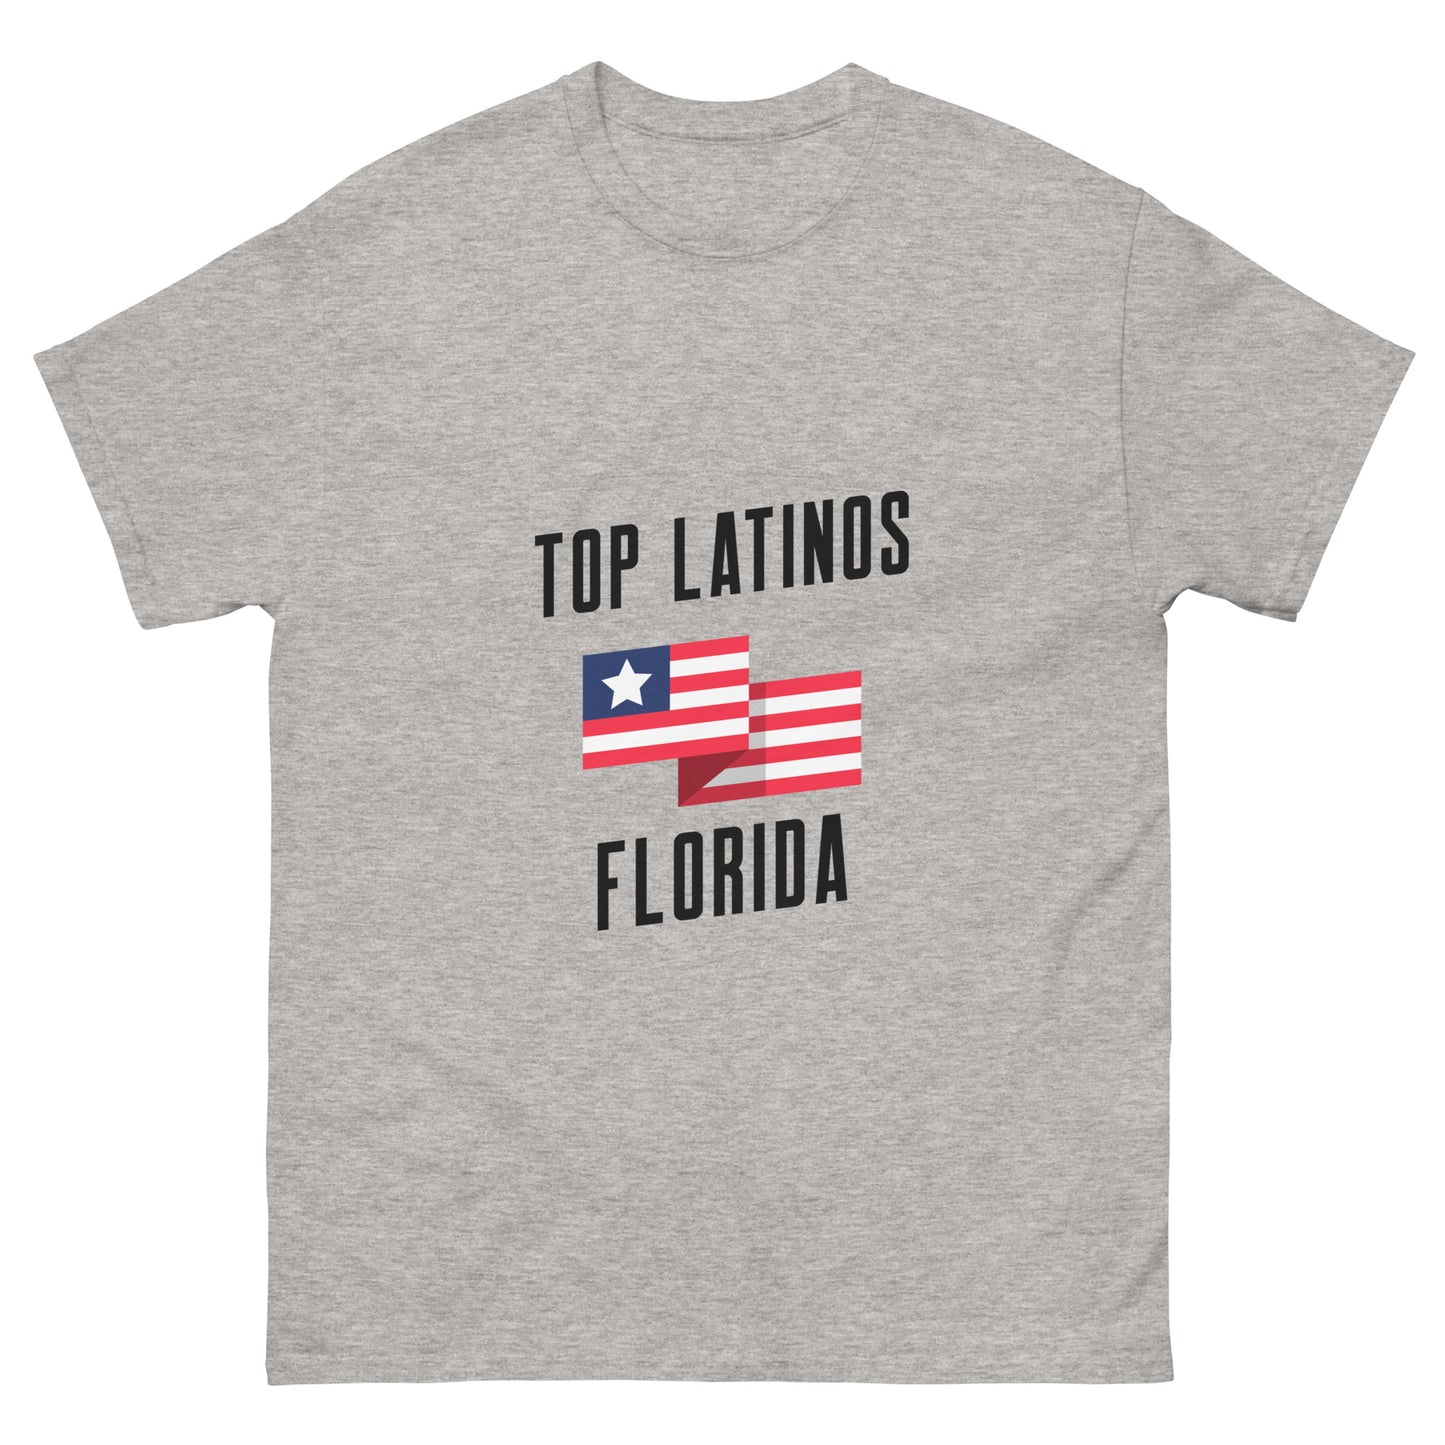 Top Latinos Florida classic tee